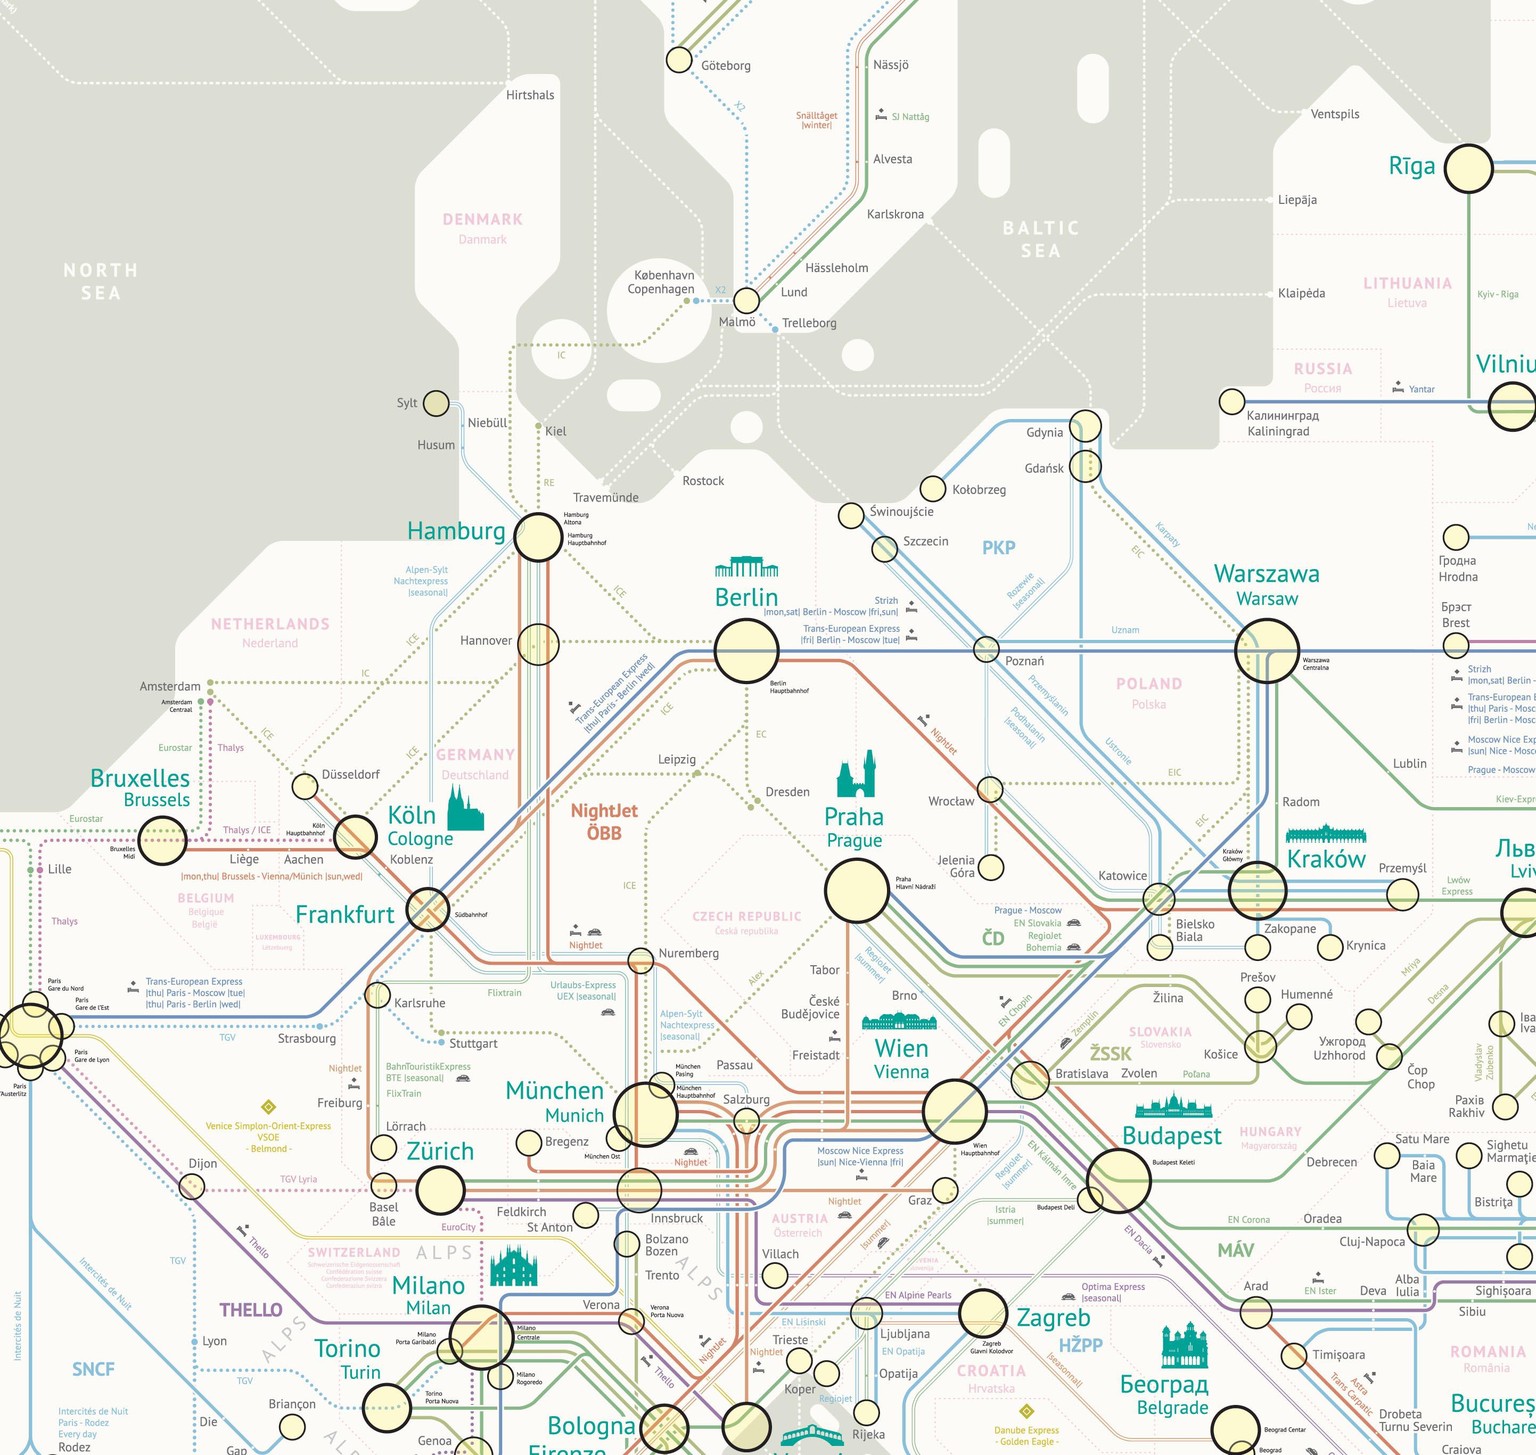 Jug Cerovićs Karte mit allen Nachtzugverbindungen Europas. Die vollständige, zoombare Karte <a target="_blank" rel="nofollow" href="http://www.night-trains.com/europe">hat er auf seine Website</a> geladen. 